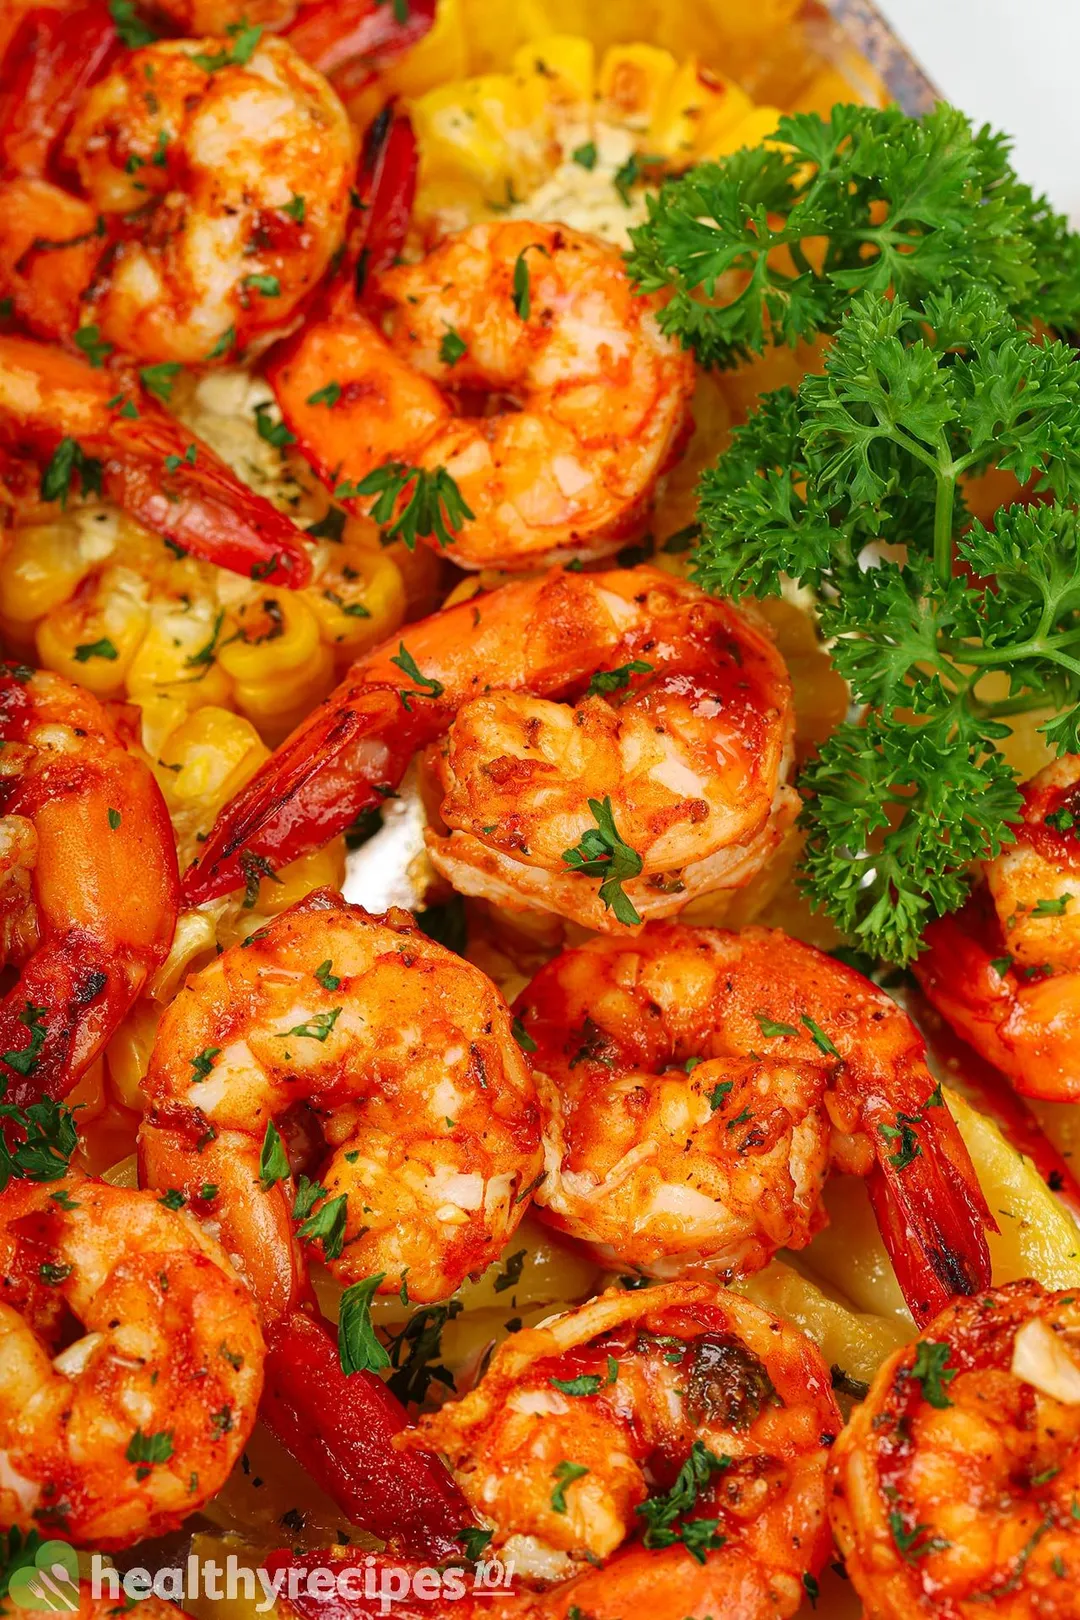 BBQ Shrimp Recipe